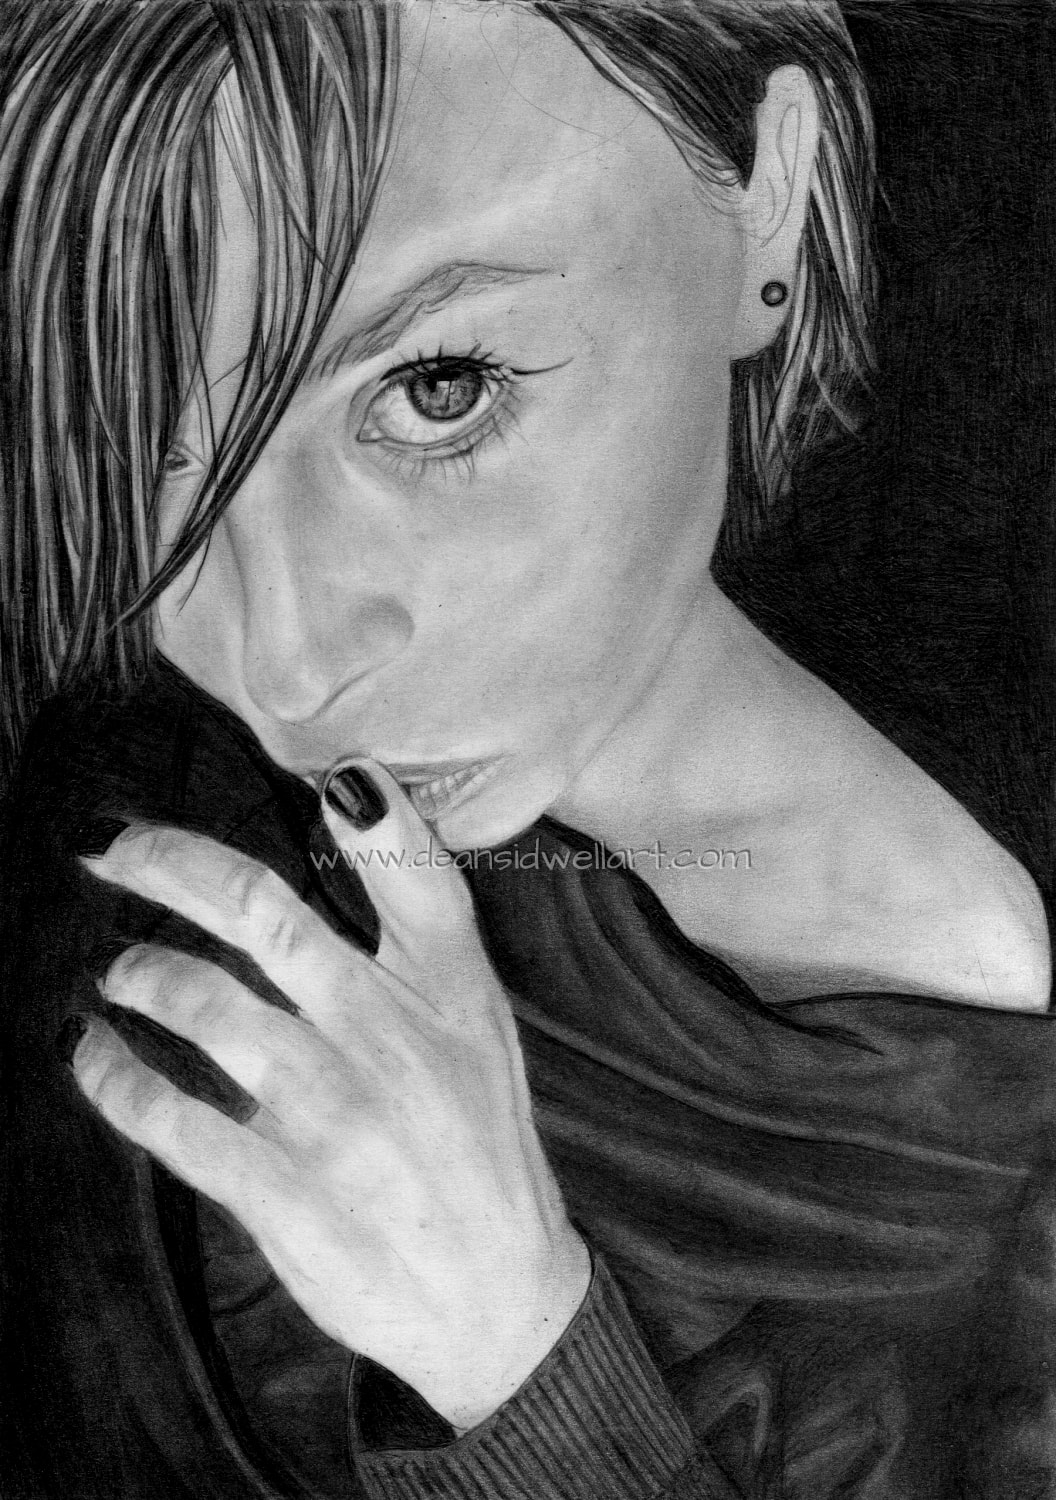 Dean Sidwell Art. Keeping Secrets: Pencil portrait work on progress tutorial 4